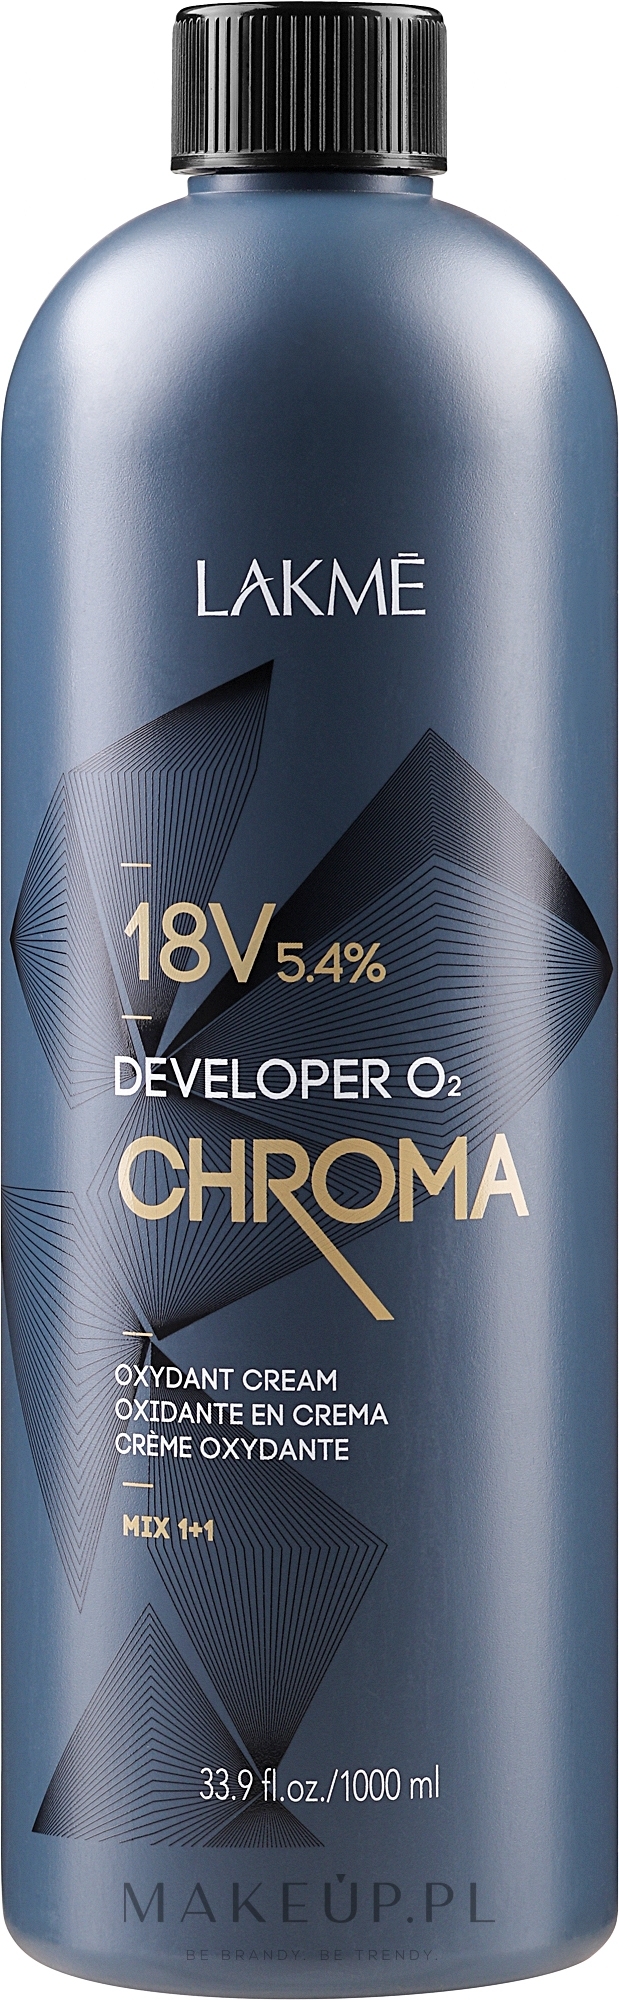 Oksydant w kremie 5,4% (18 vol.) - Lakmé Chroma Developer 02 Oxydant Cream — Zdjęcie 1000 ml